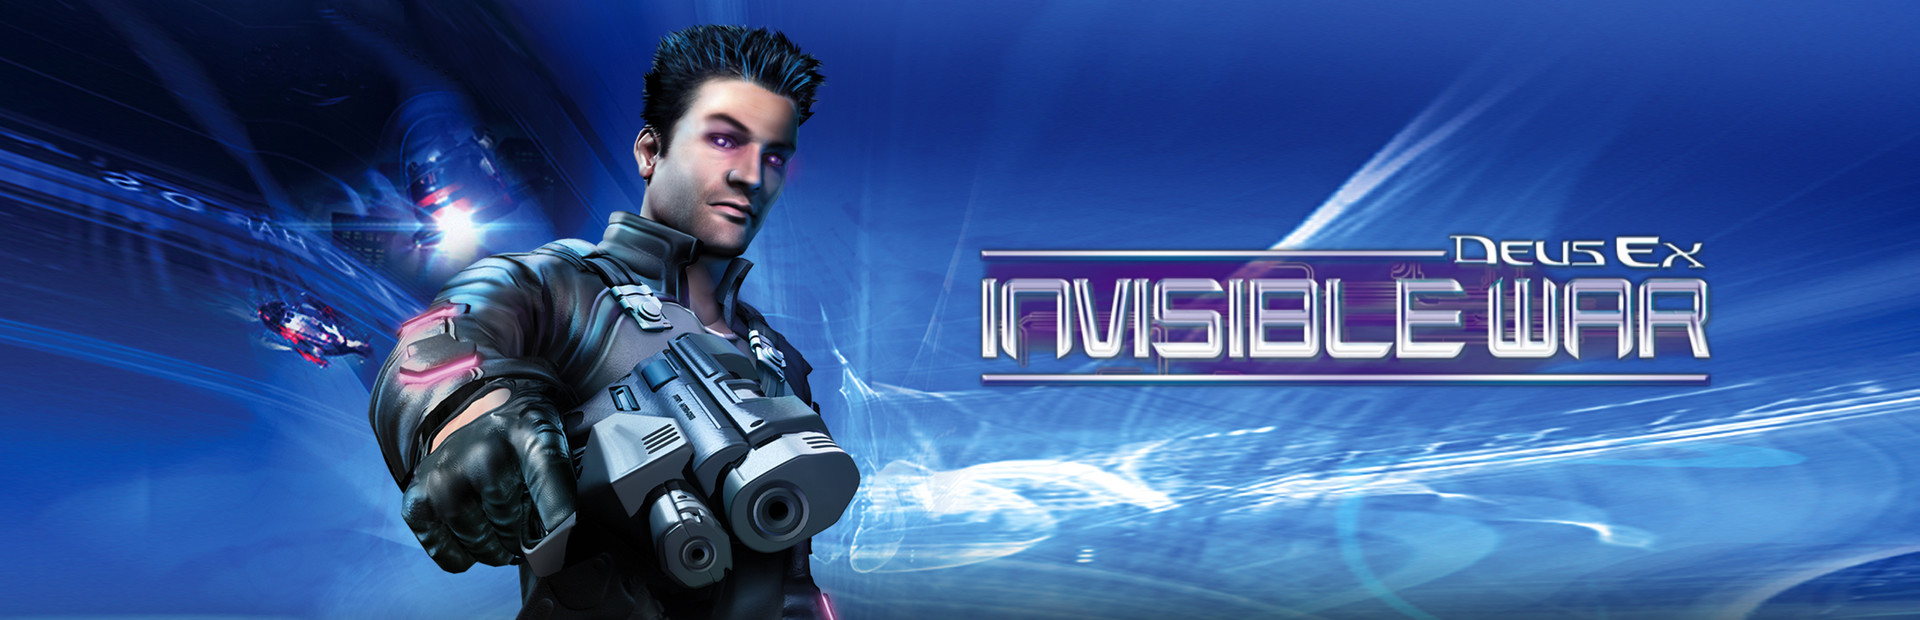 Deus Ex: Invisible War cover image